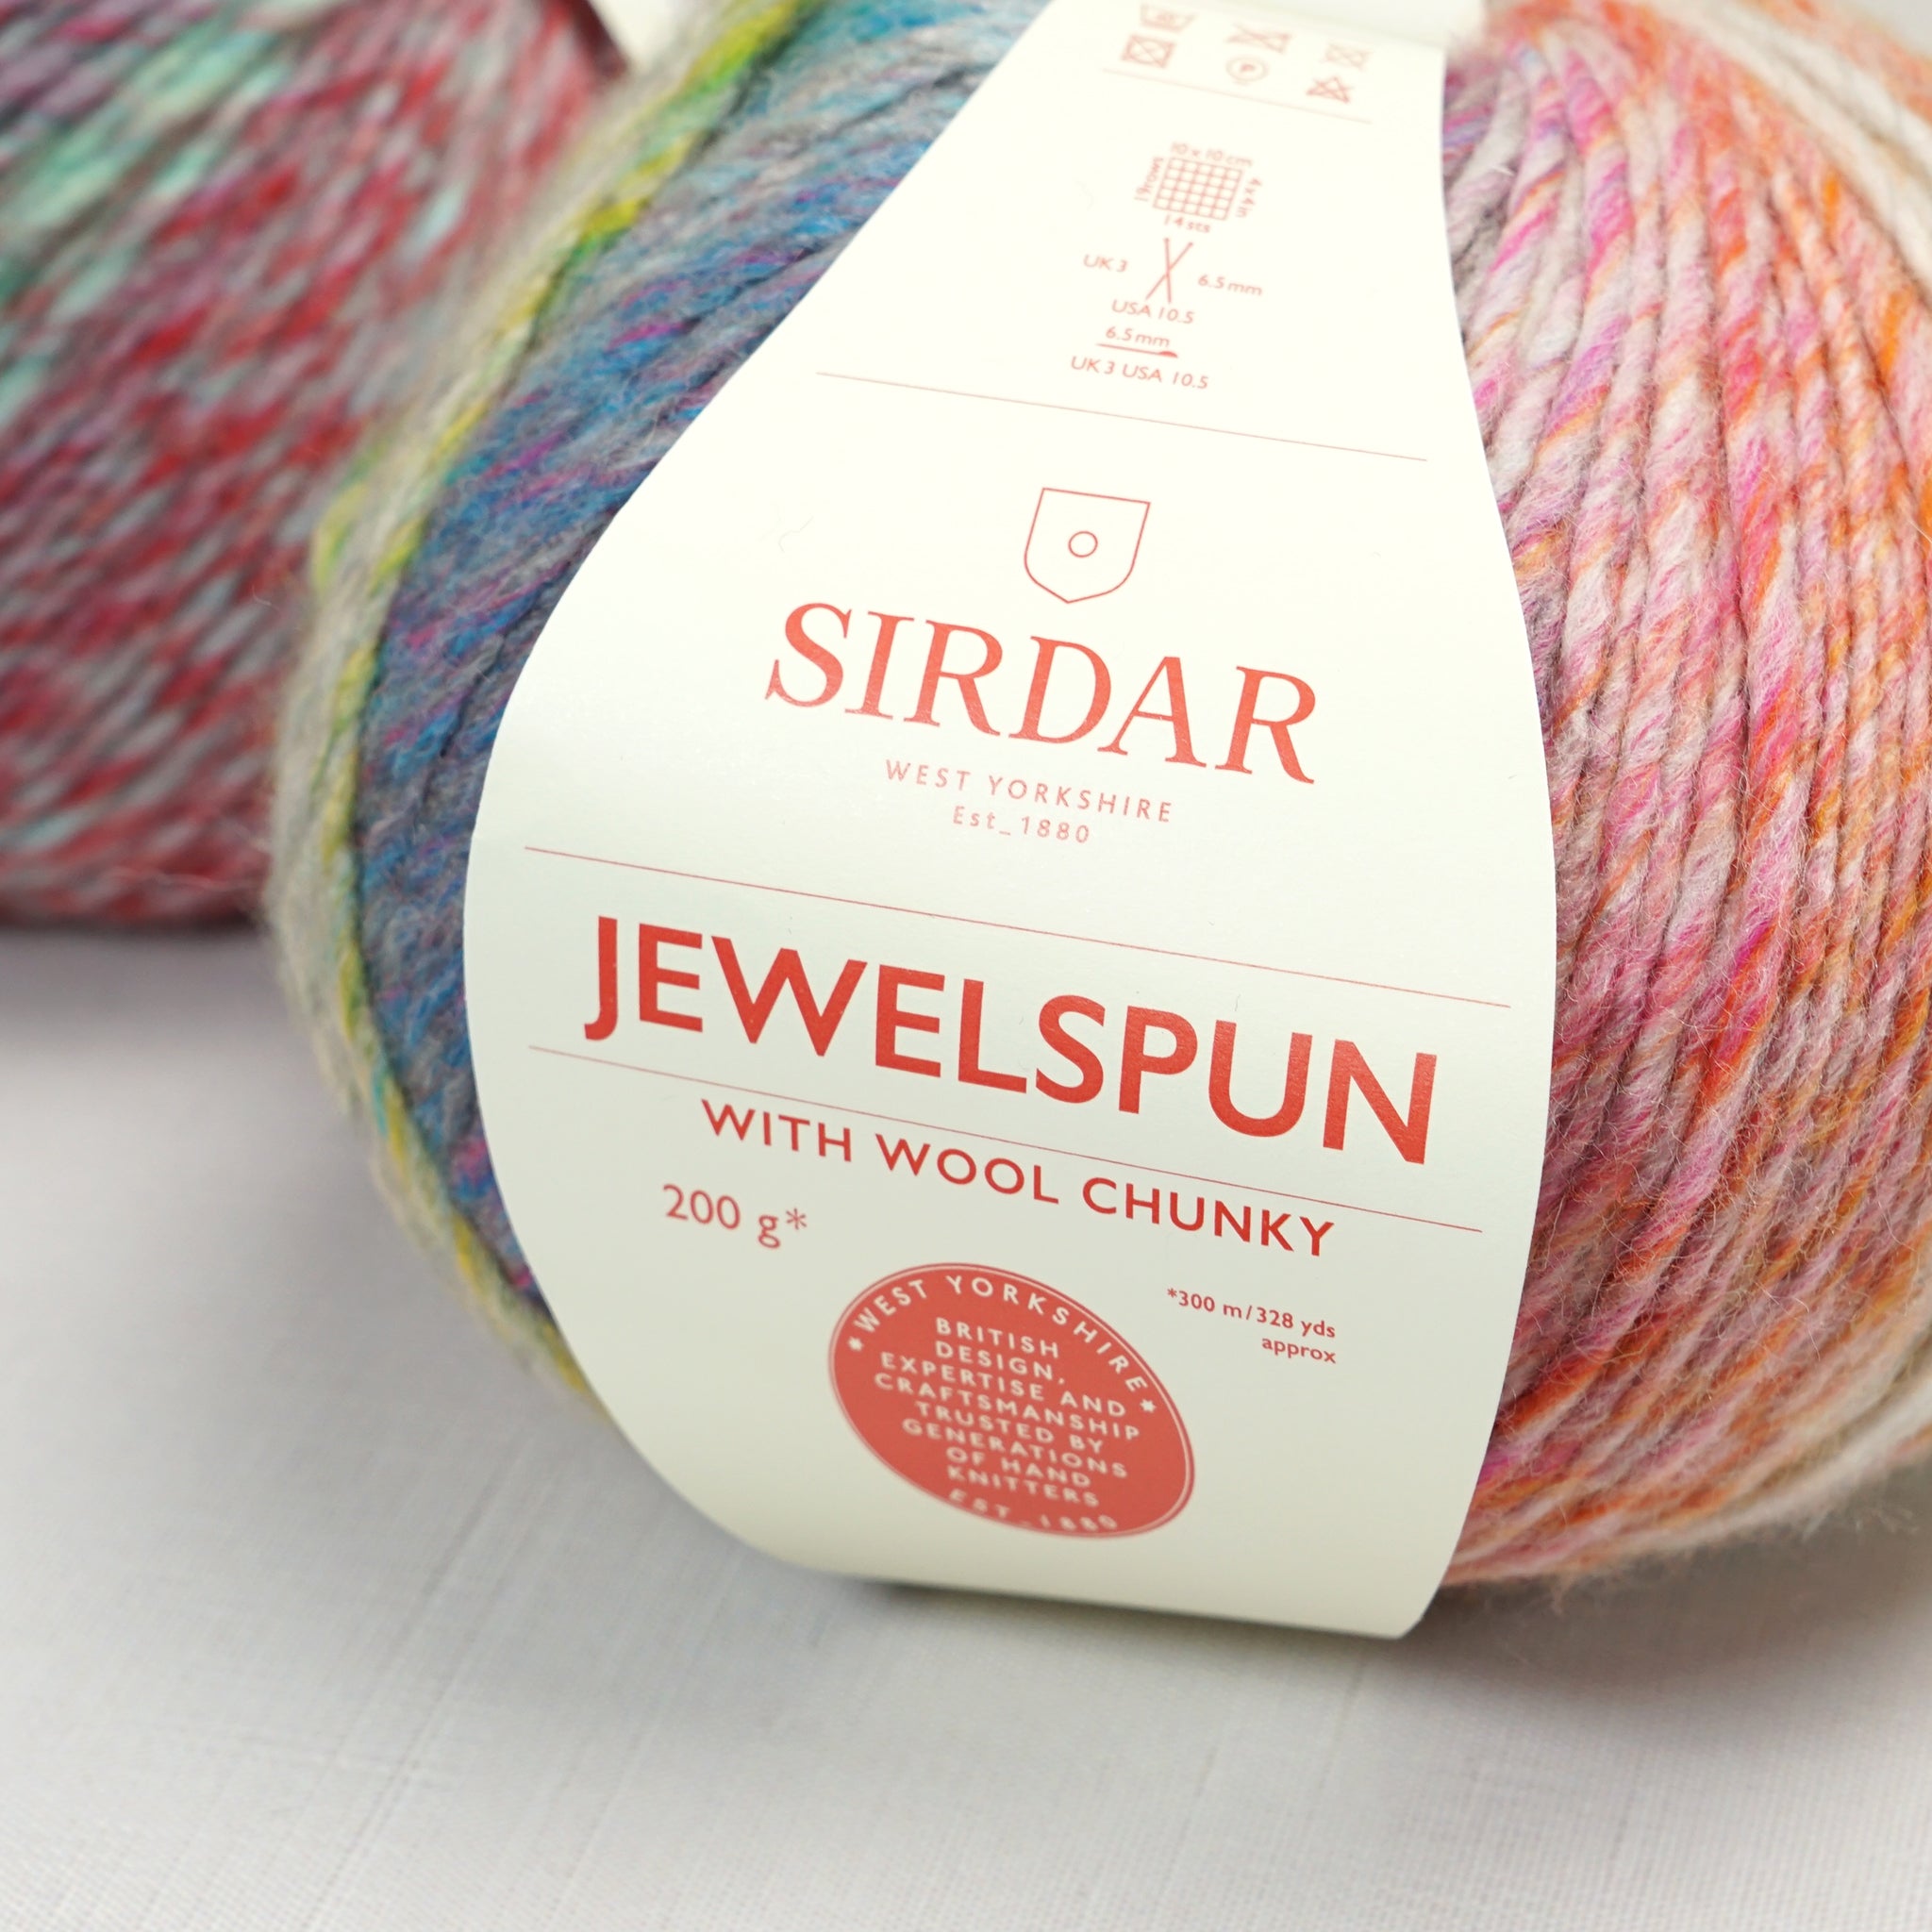 Jewelspun with Wool Chunky